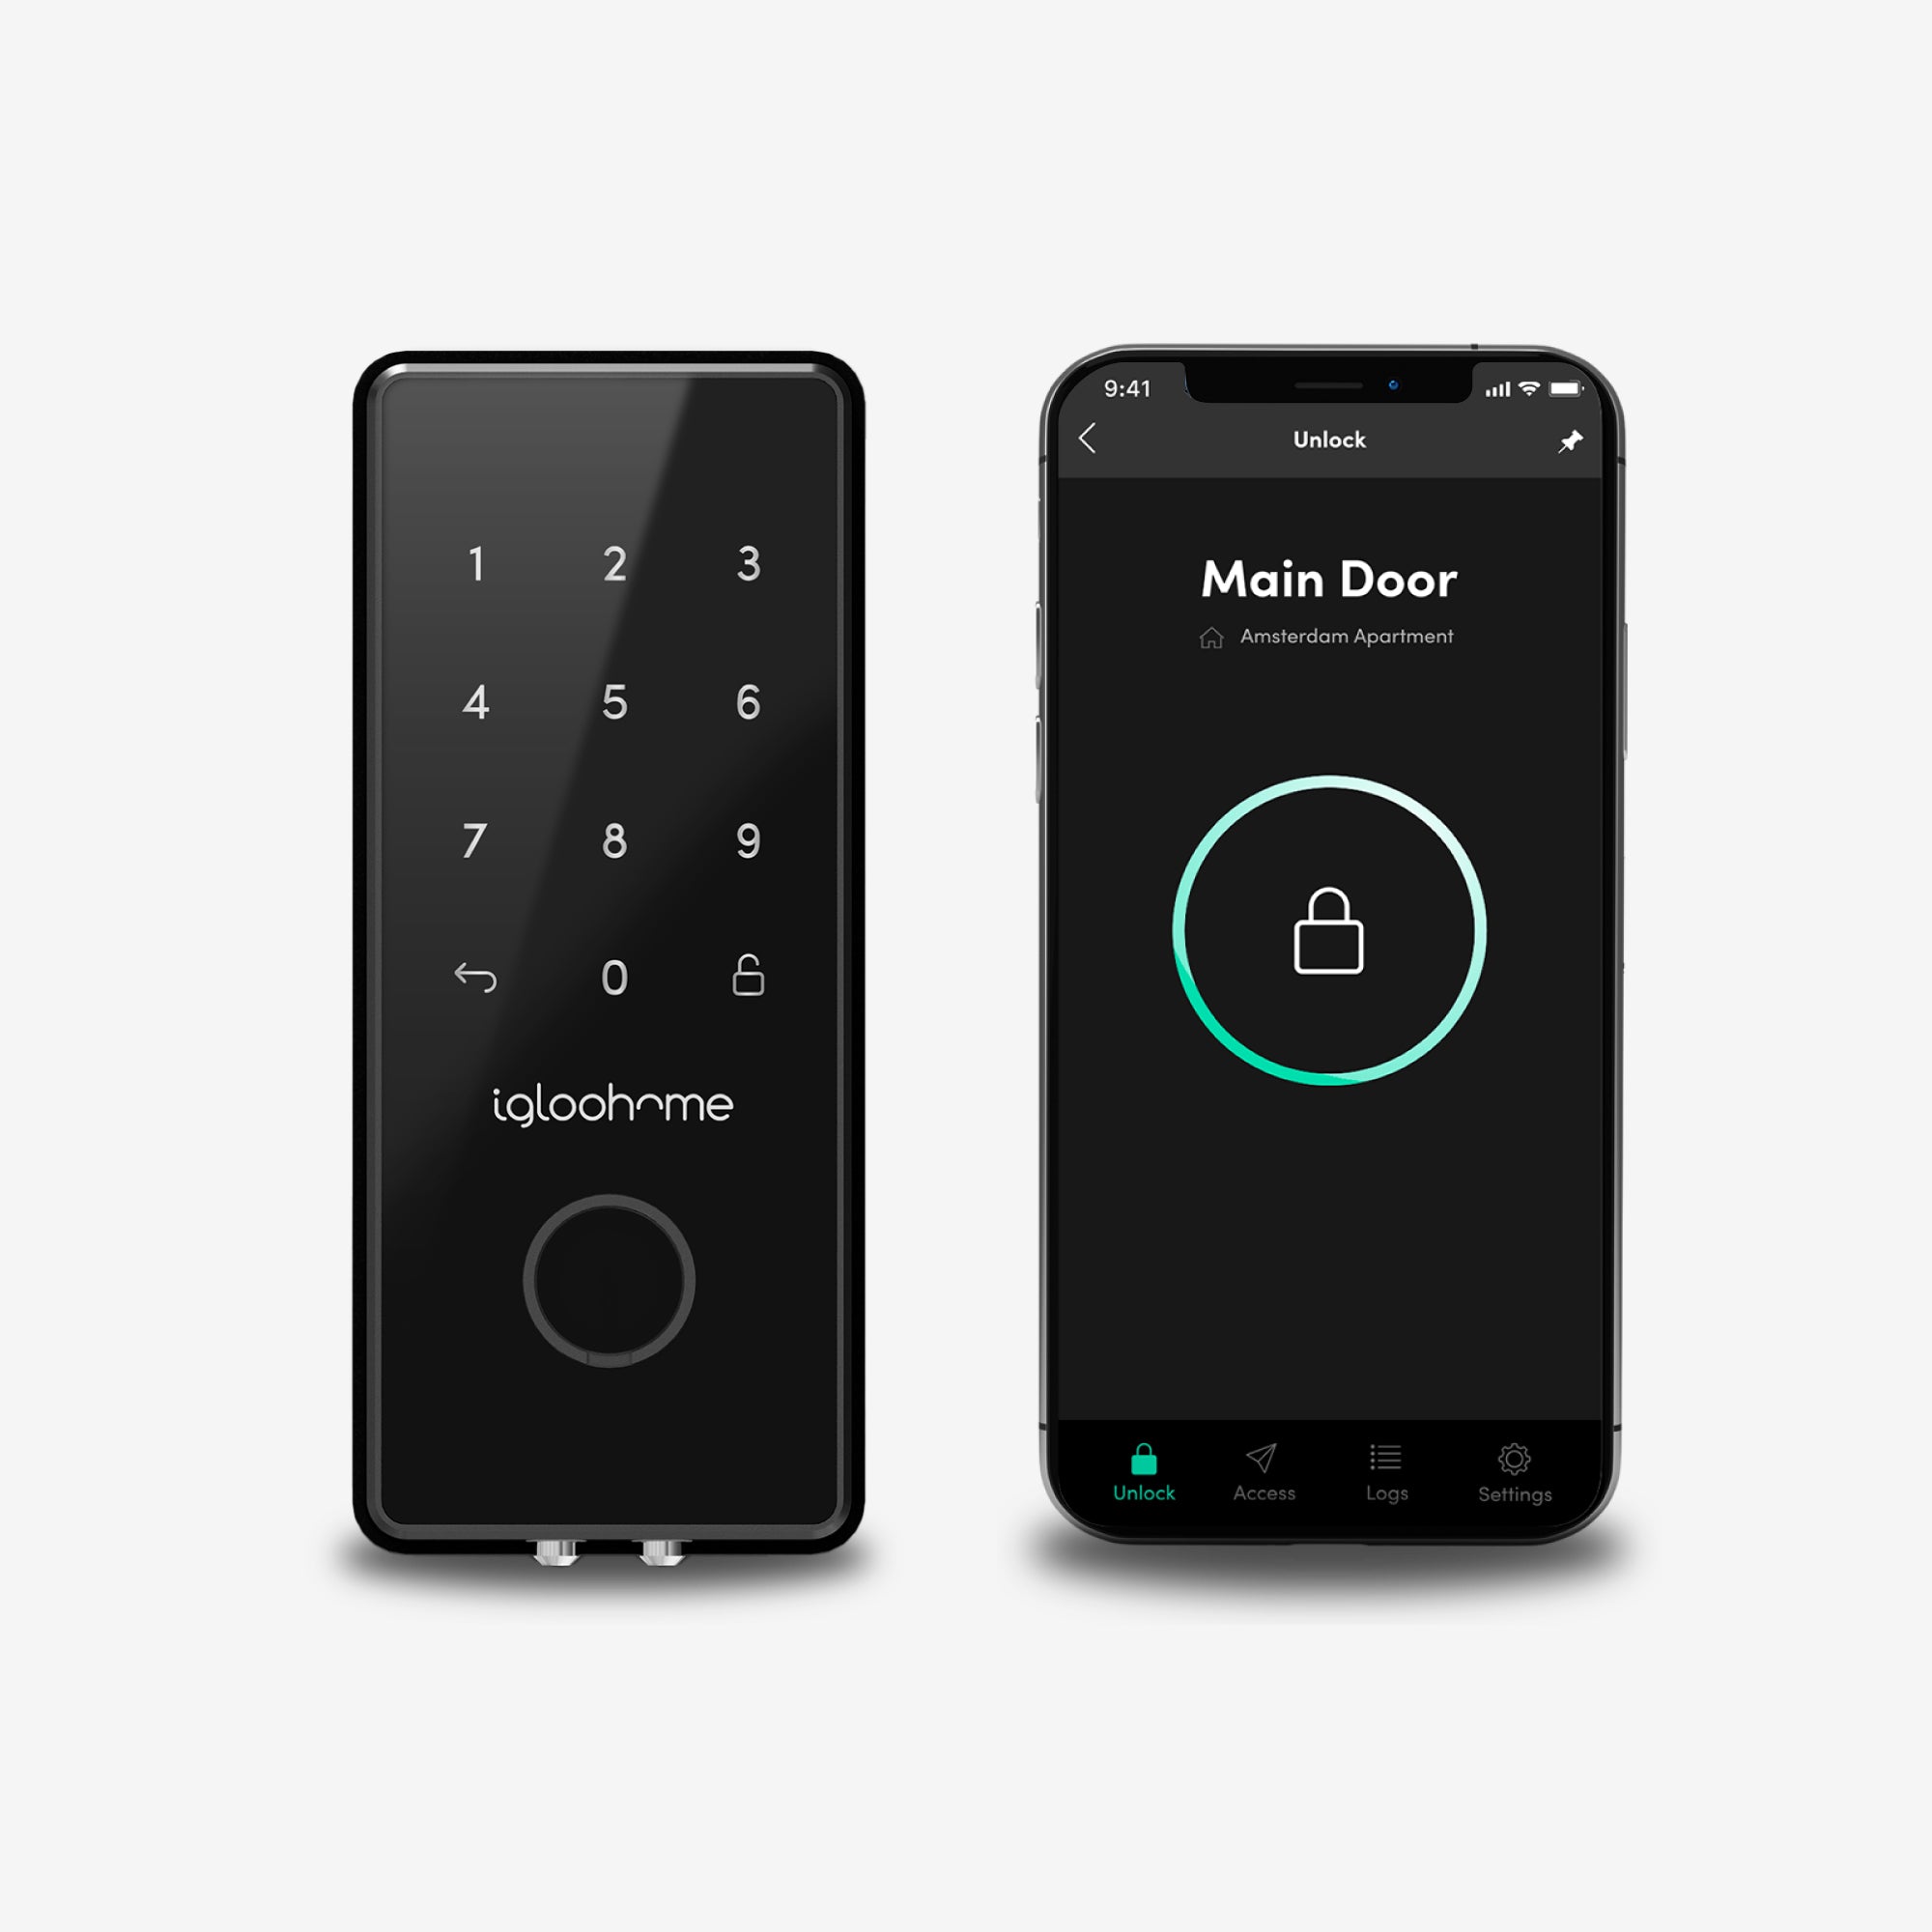 Cerradura para oficina Deadbolt 2S Metal Grey. Bluetooth vía app, Contraseña, y Llave de alta seguridad. Unidad interior y smartphone con App igloohome, vista frontal.